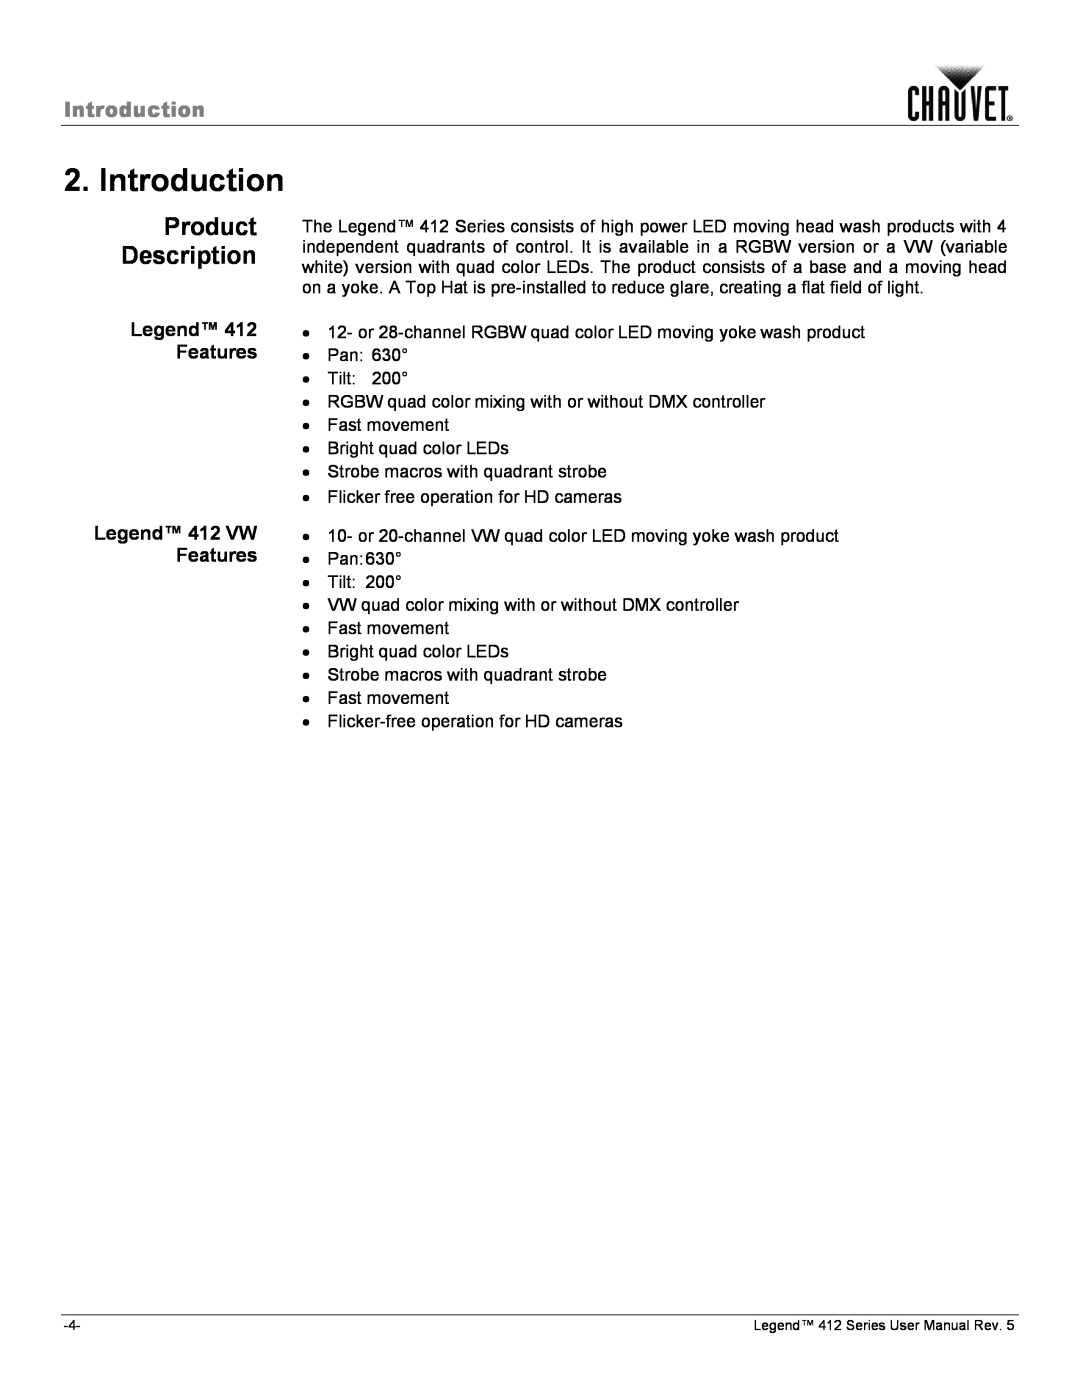 Chauvet 412VW user manual Introduction, Product Description, Features, Legend 412 VW 